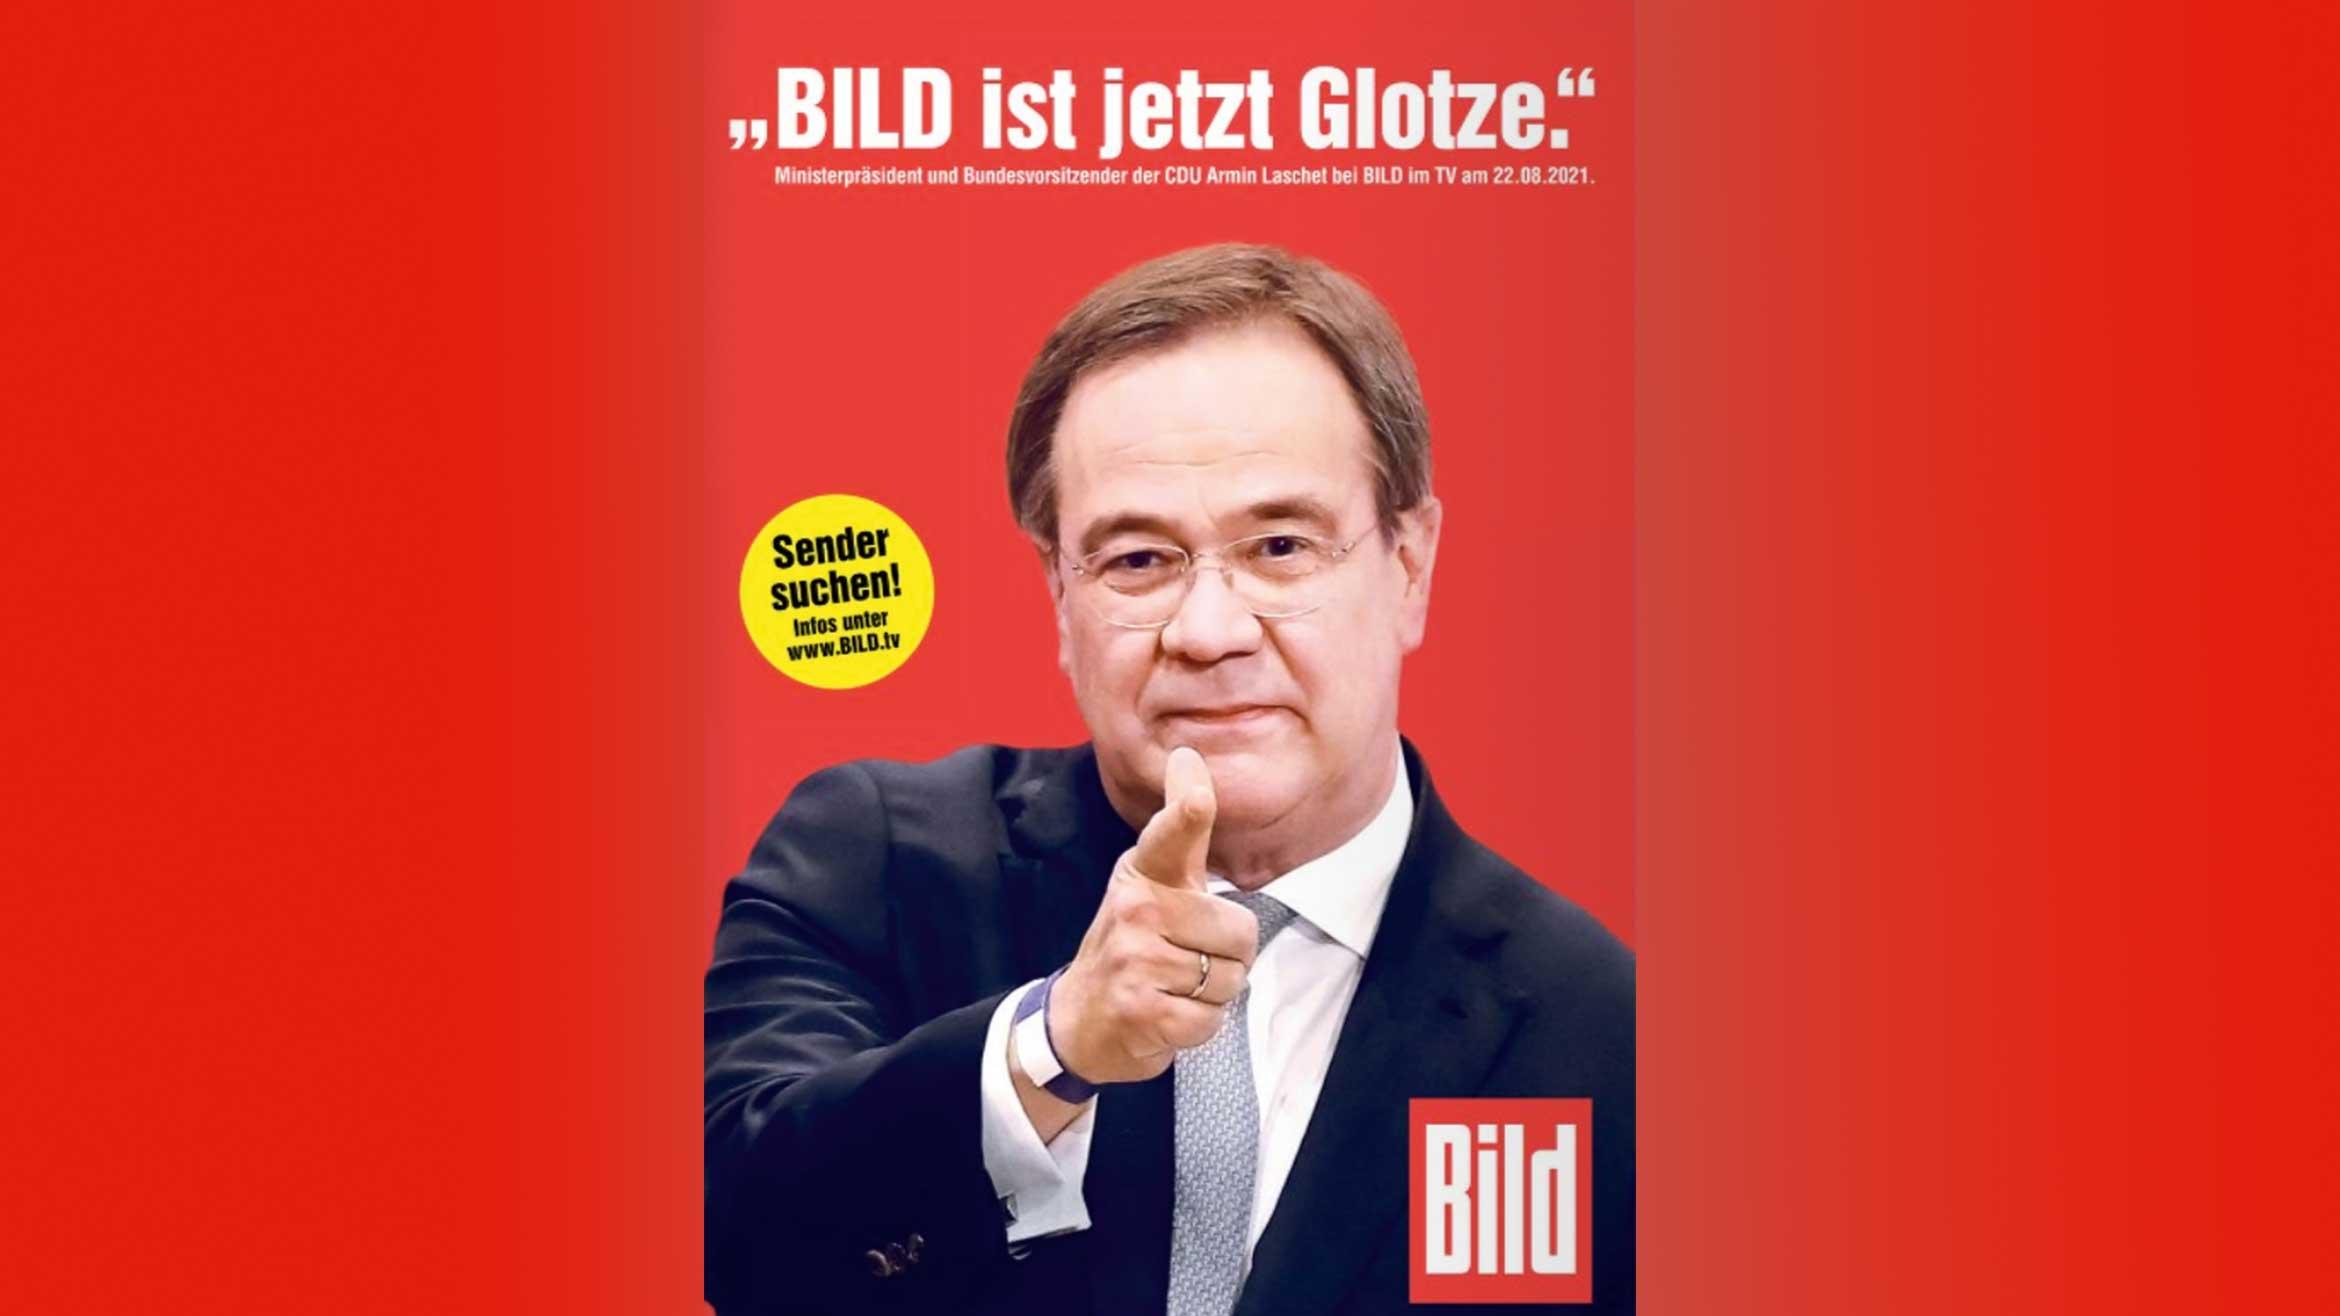 Die Bild hat ungefragt mit CDU-Kanzlerkandidat Armin Laschet geworben. Was sagt Medienrechtsexperte Christian Solmecke dazu? MEEDIA hat nachgefragt. 